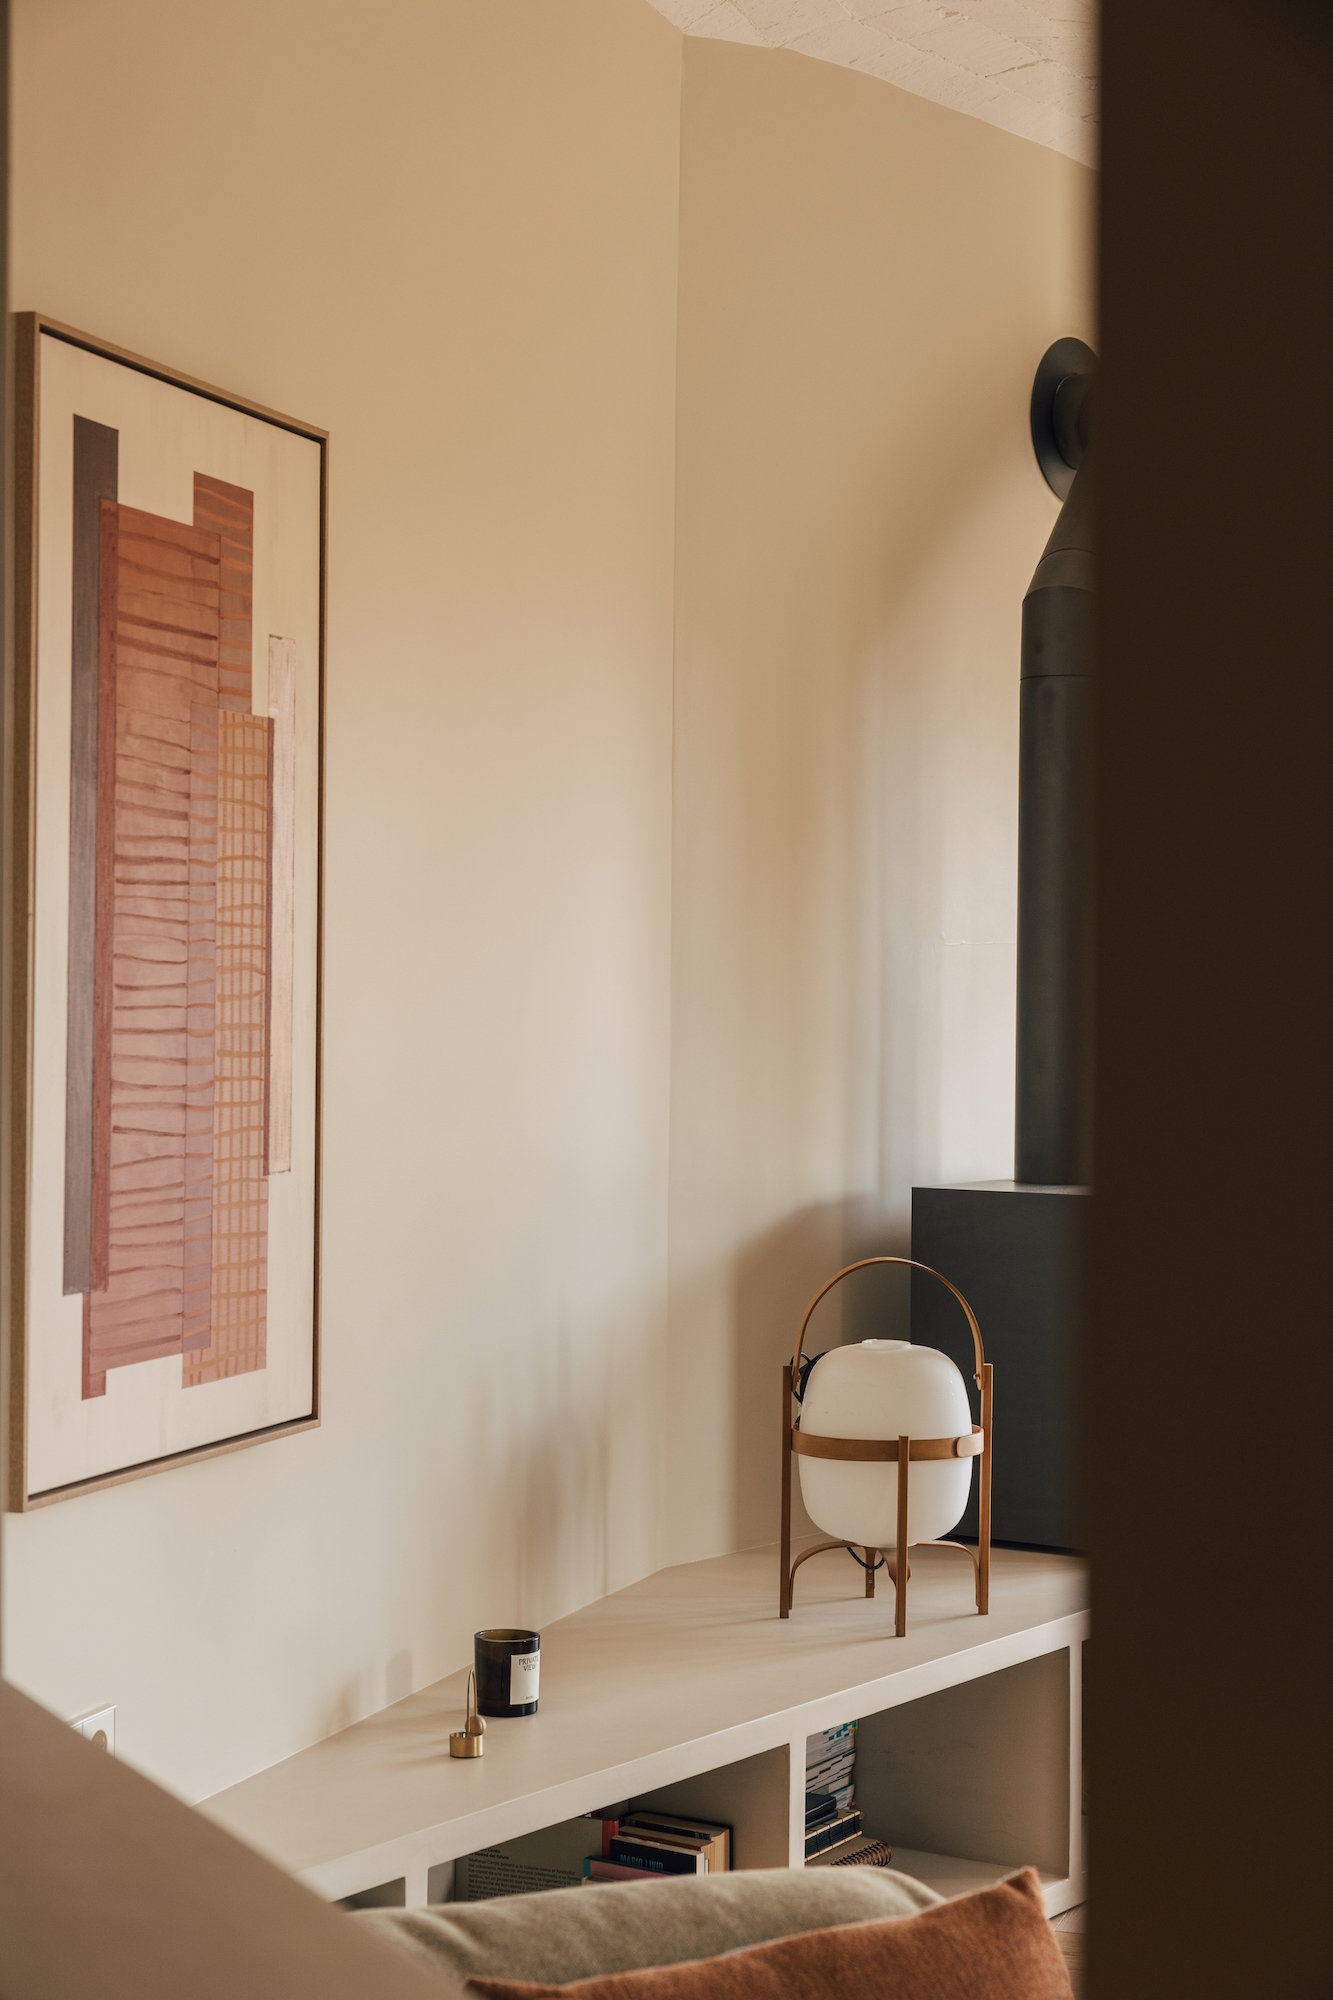 Firmas italianas o daneses decoran los espacios de esta casa. Cada pieza ha sido escogida a conciencia para generar un clima suave y tranquilo. En la pared, se ha optado por obras que refuerzan la idea de calma.  